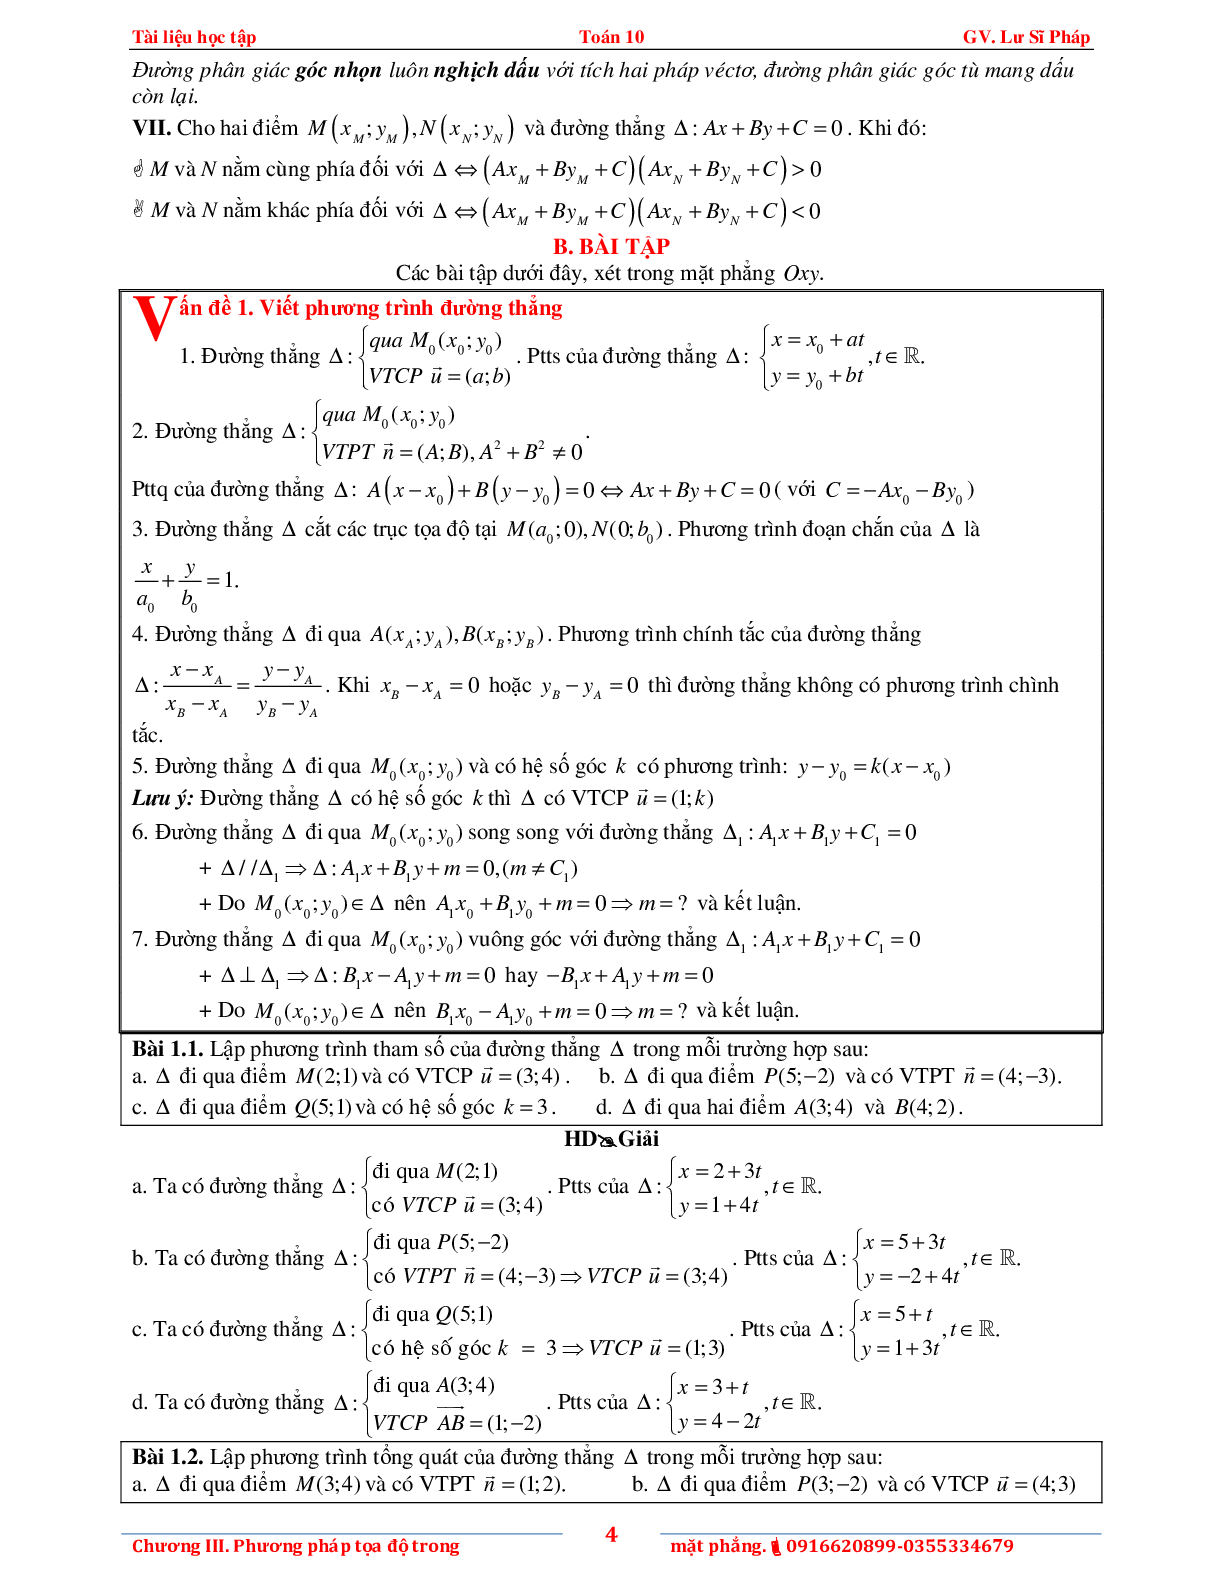 Tài liệu phương pháp tọa độ trong mặt phẳng (trang 8)